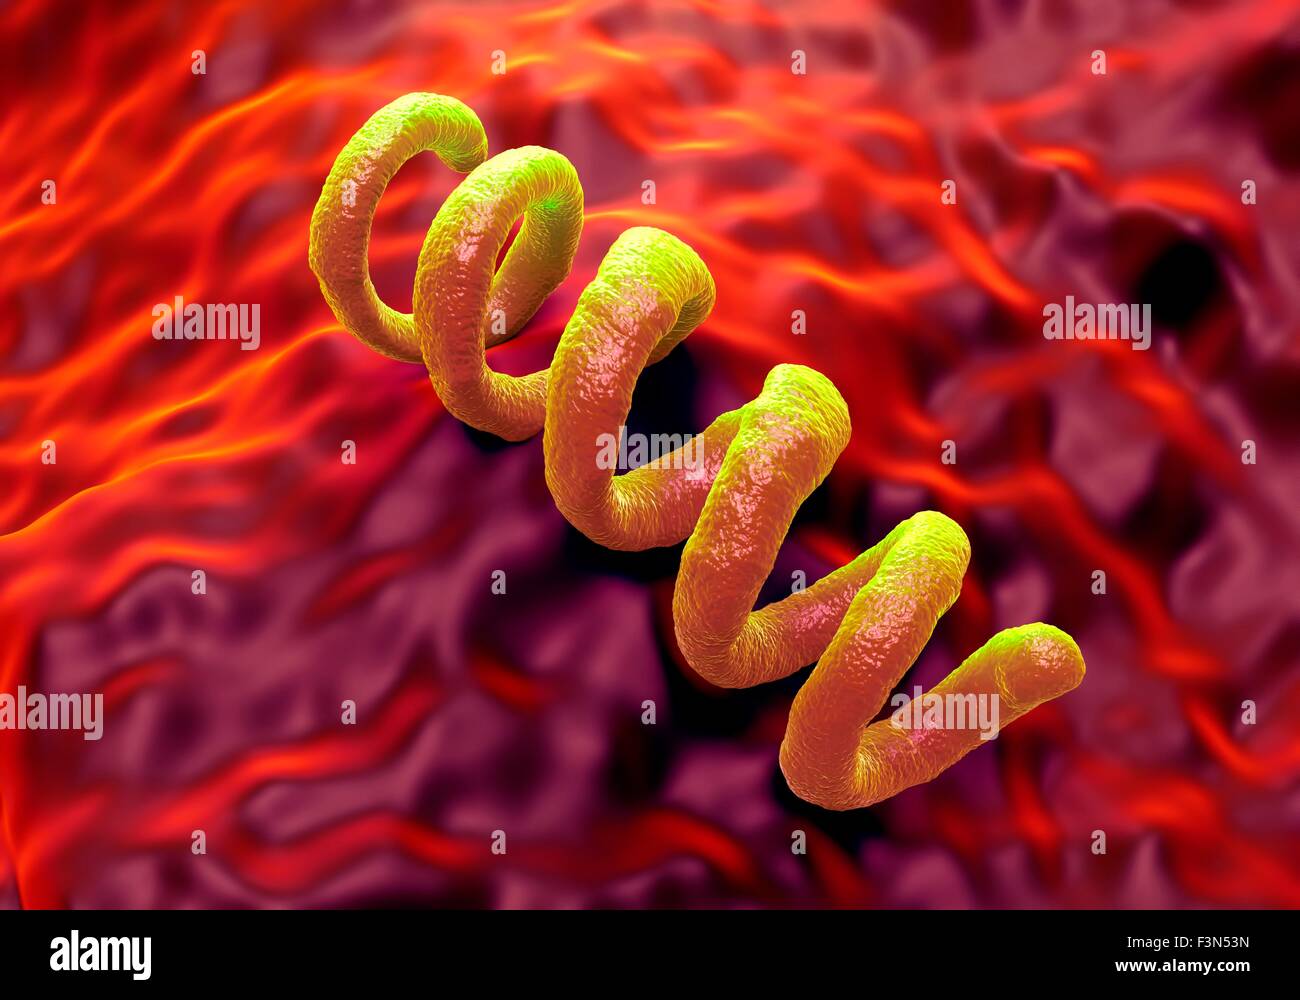 Treponema pallidum syphilis bacterium Stock Photo - Alamy